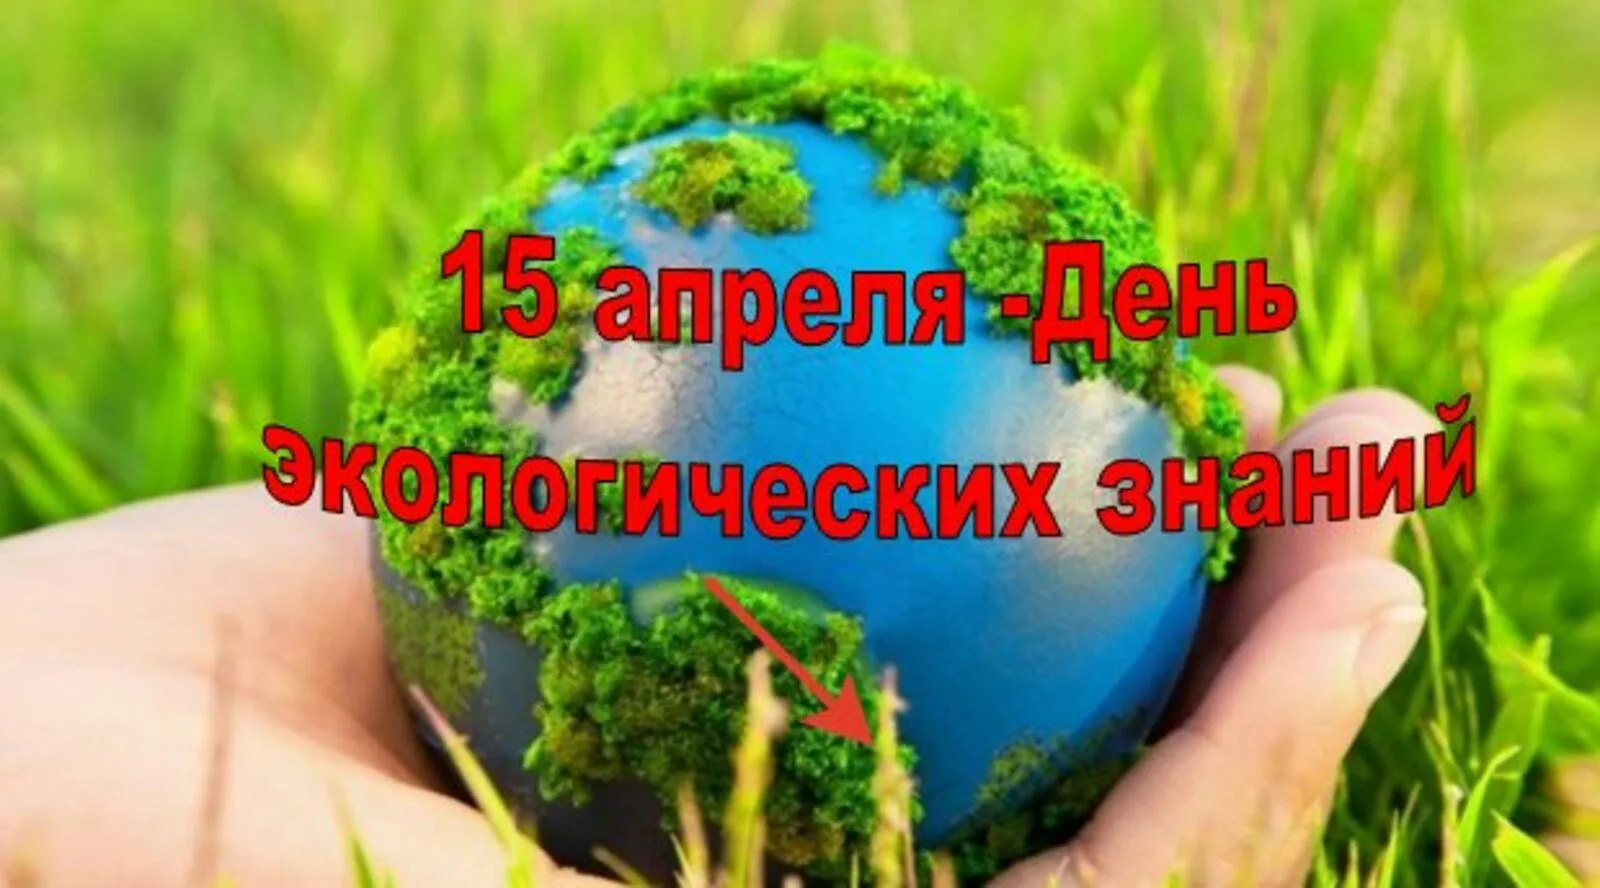 15 апреля экологических знаний. День экологических знаний. Всемирный день экологических знаний. Международный день экологических знаний 15 апреля. День экологической грамотности.